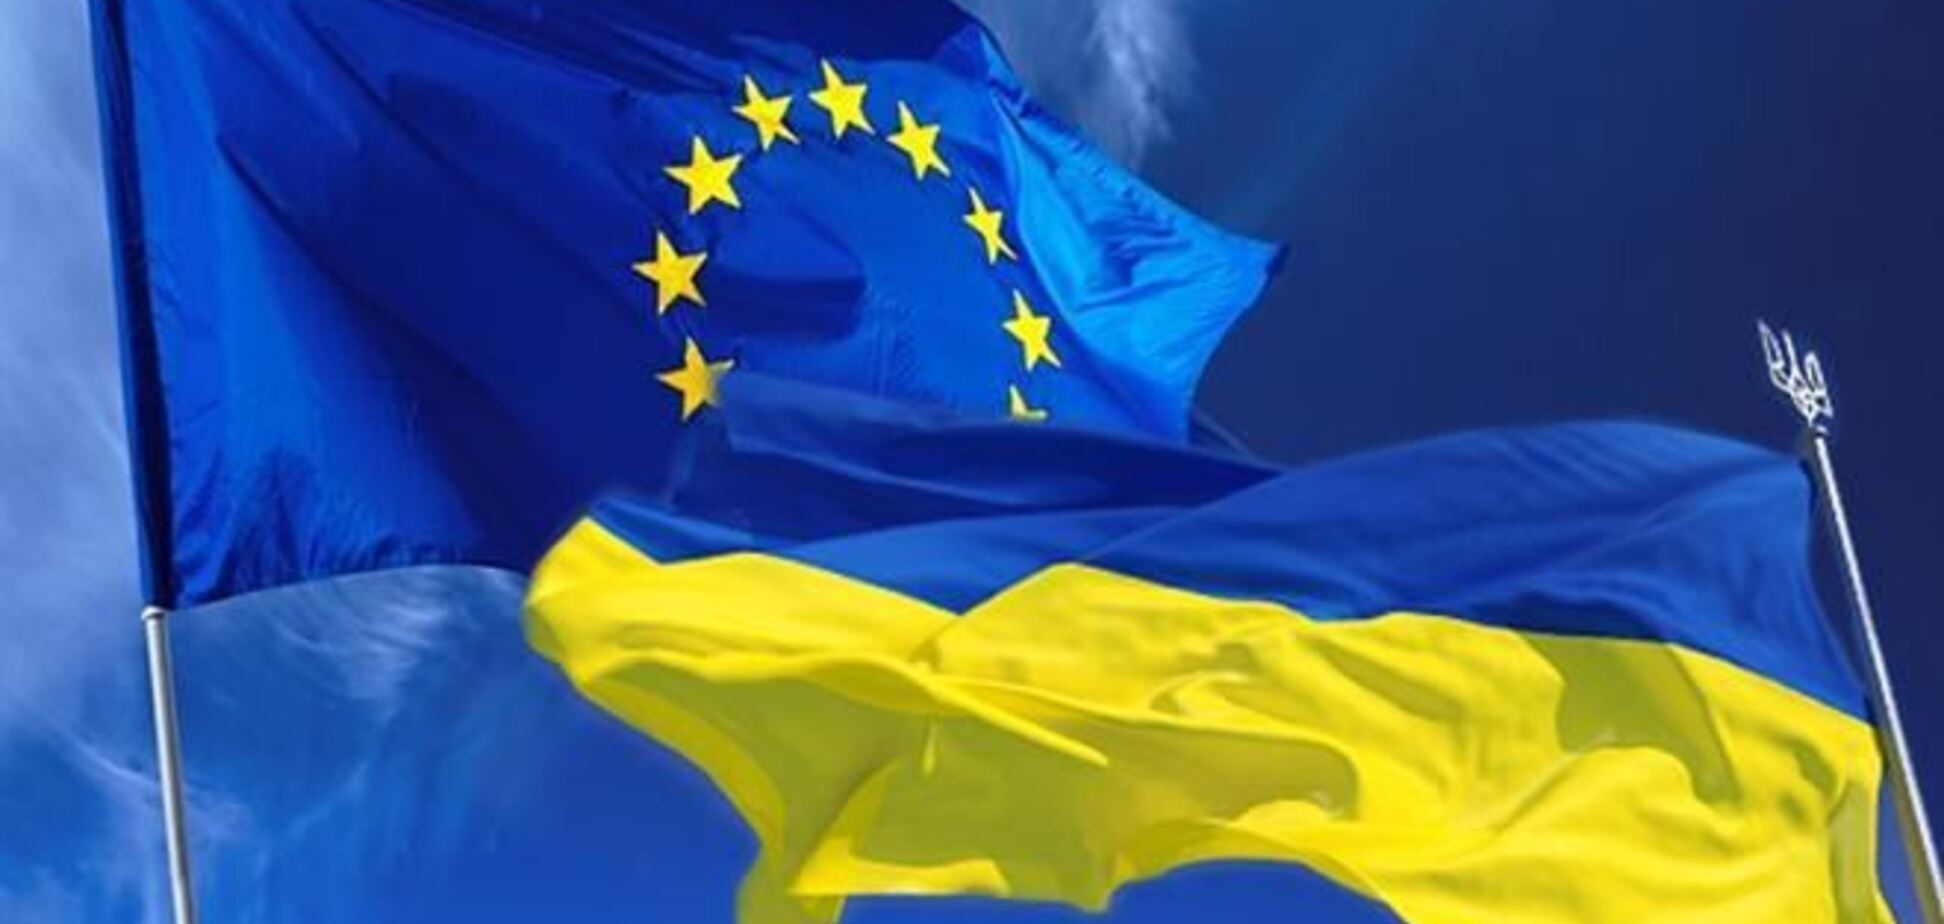 ЕС наложит на Украину оружейное эмбарго - СМИ